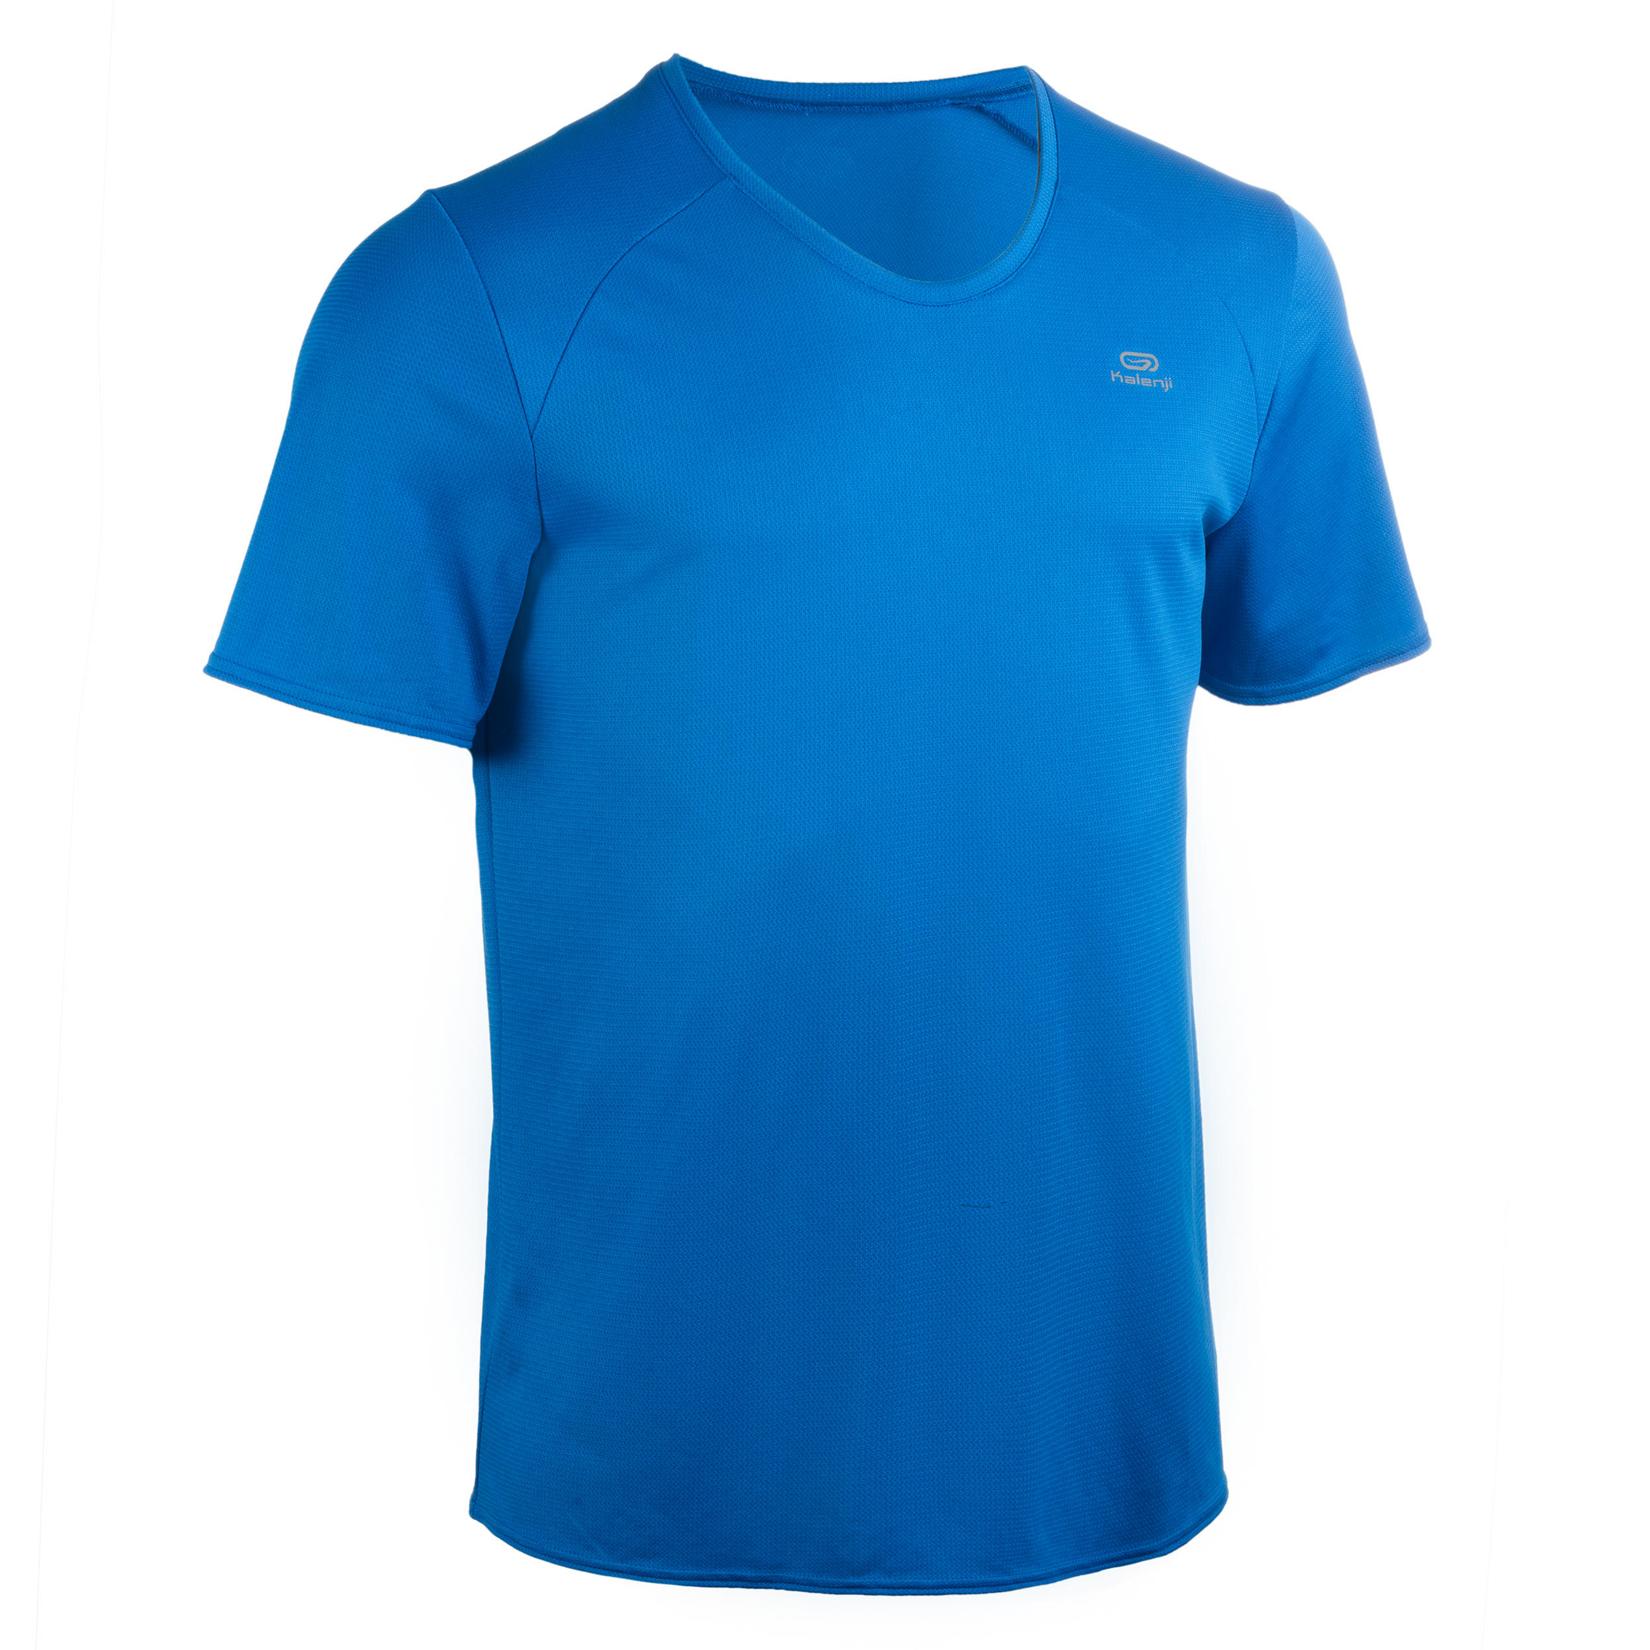 Προσφορά Ανδρικό εξατομικεύσιμο T-shirt αθλητικών συλλόγων - Μπλε για 5€ σε Decathlon